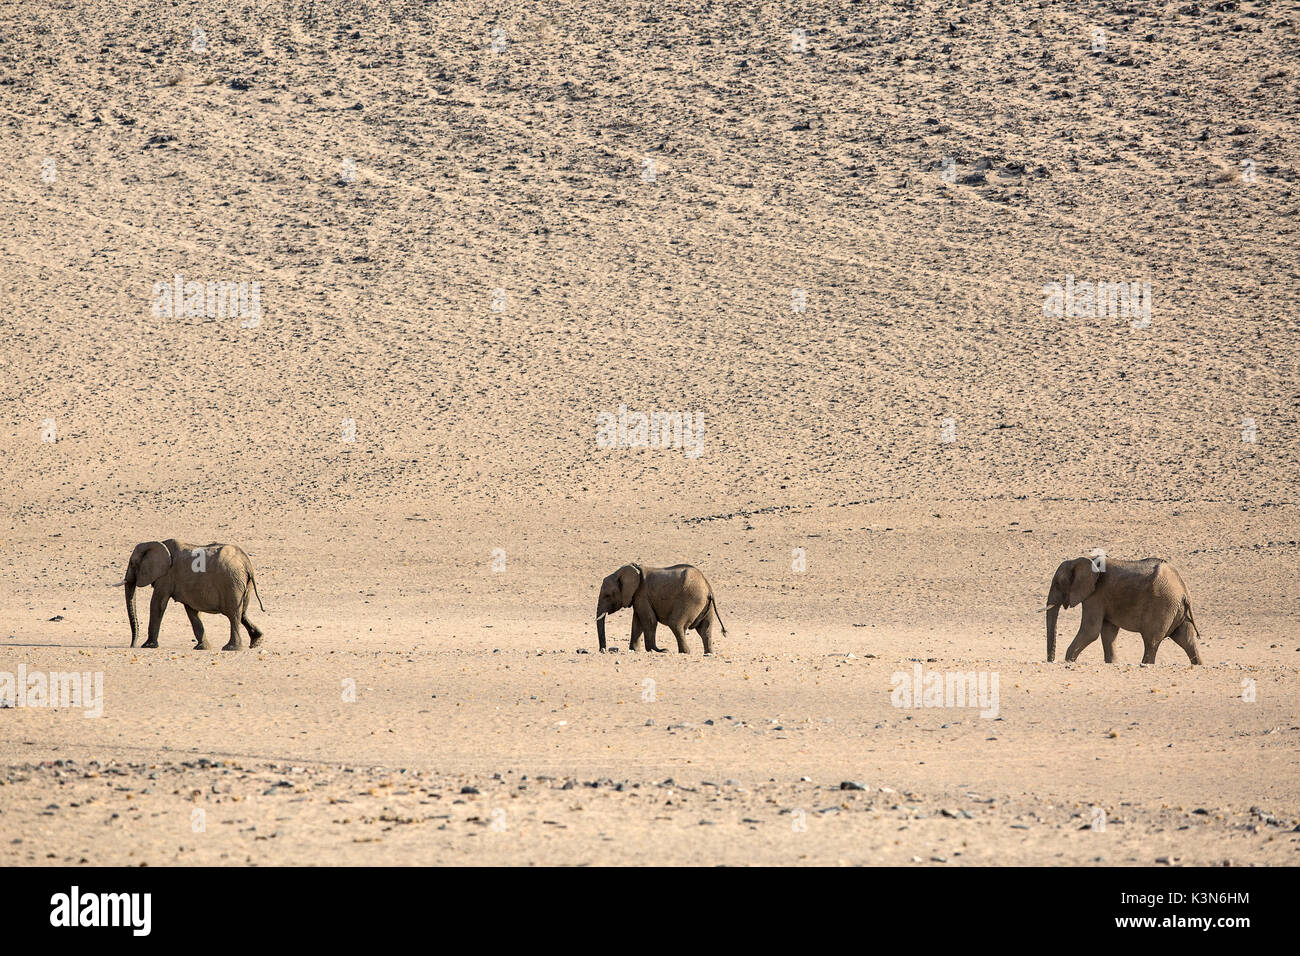 desert elephant family in Purros desert, Namibia Stock Photo